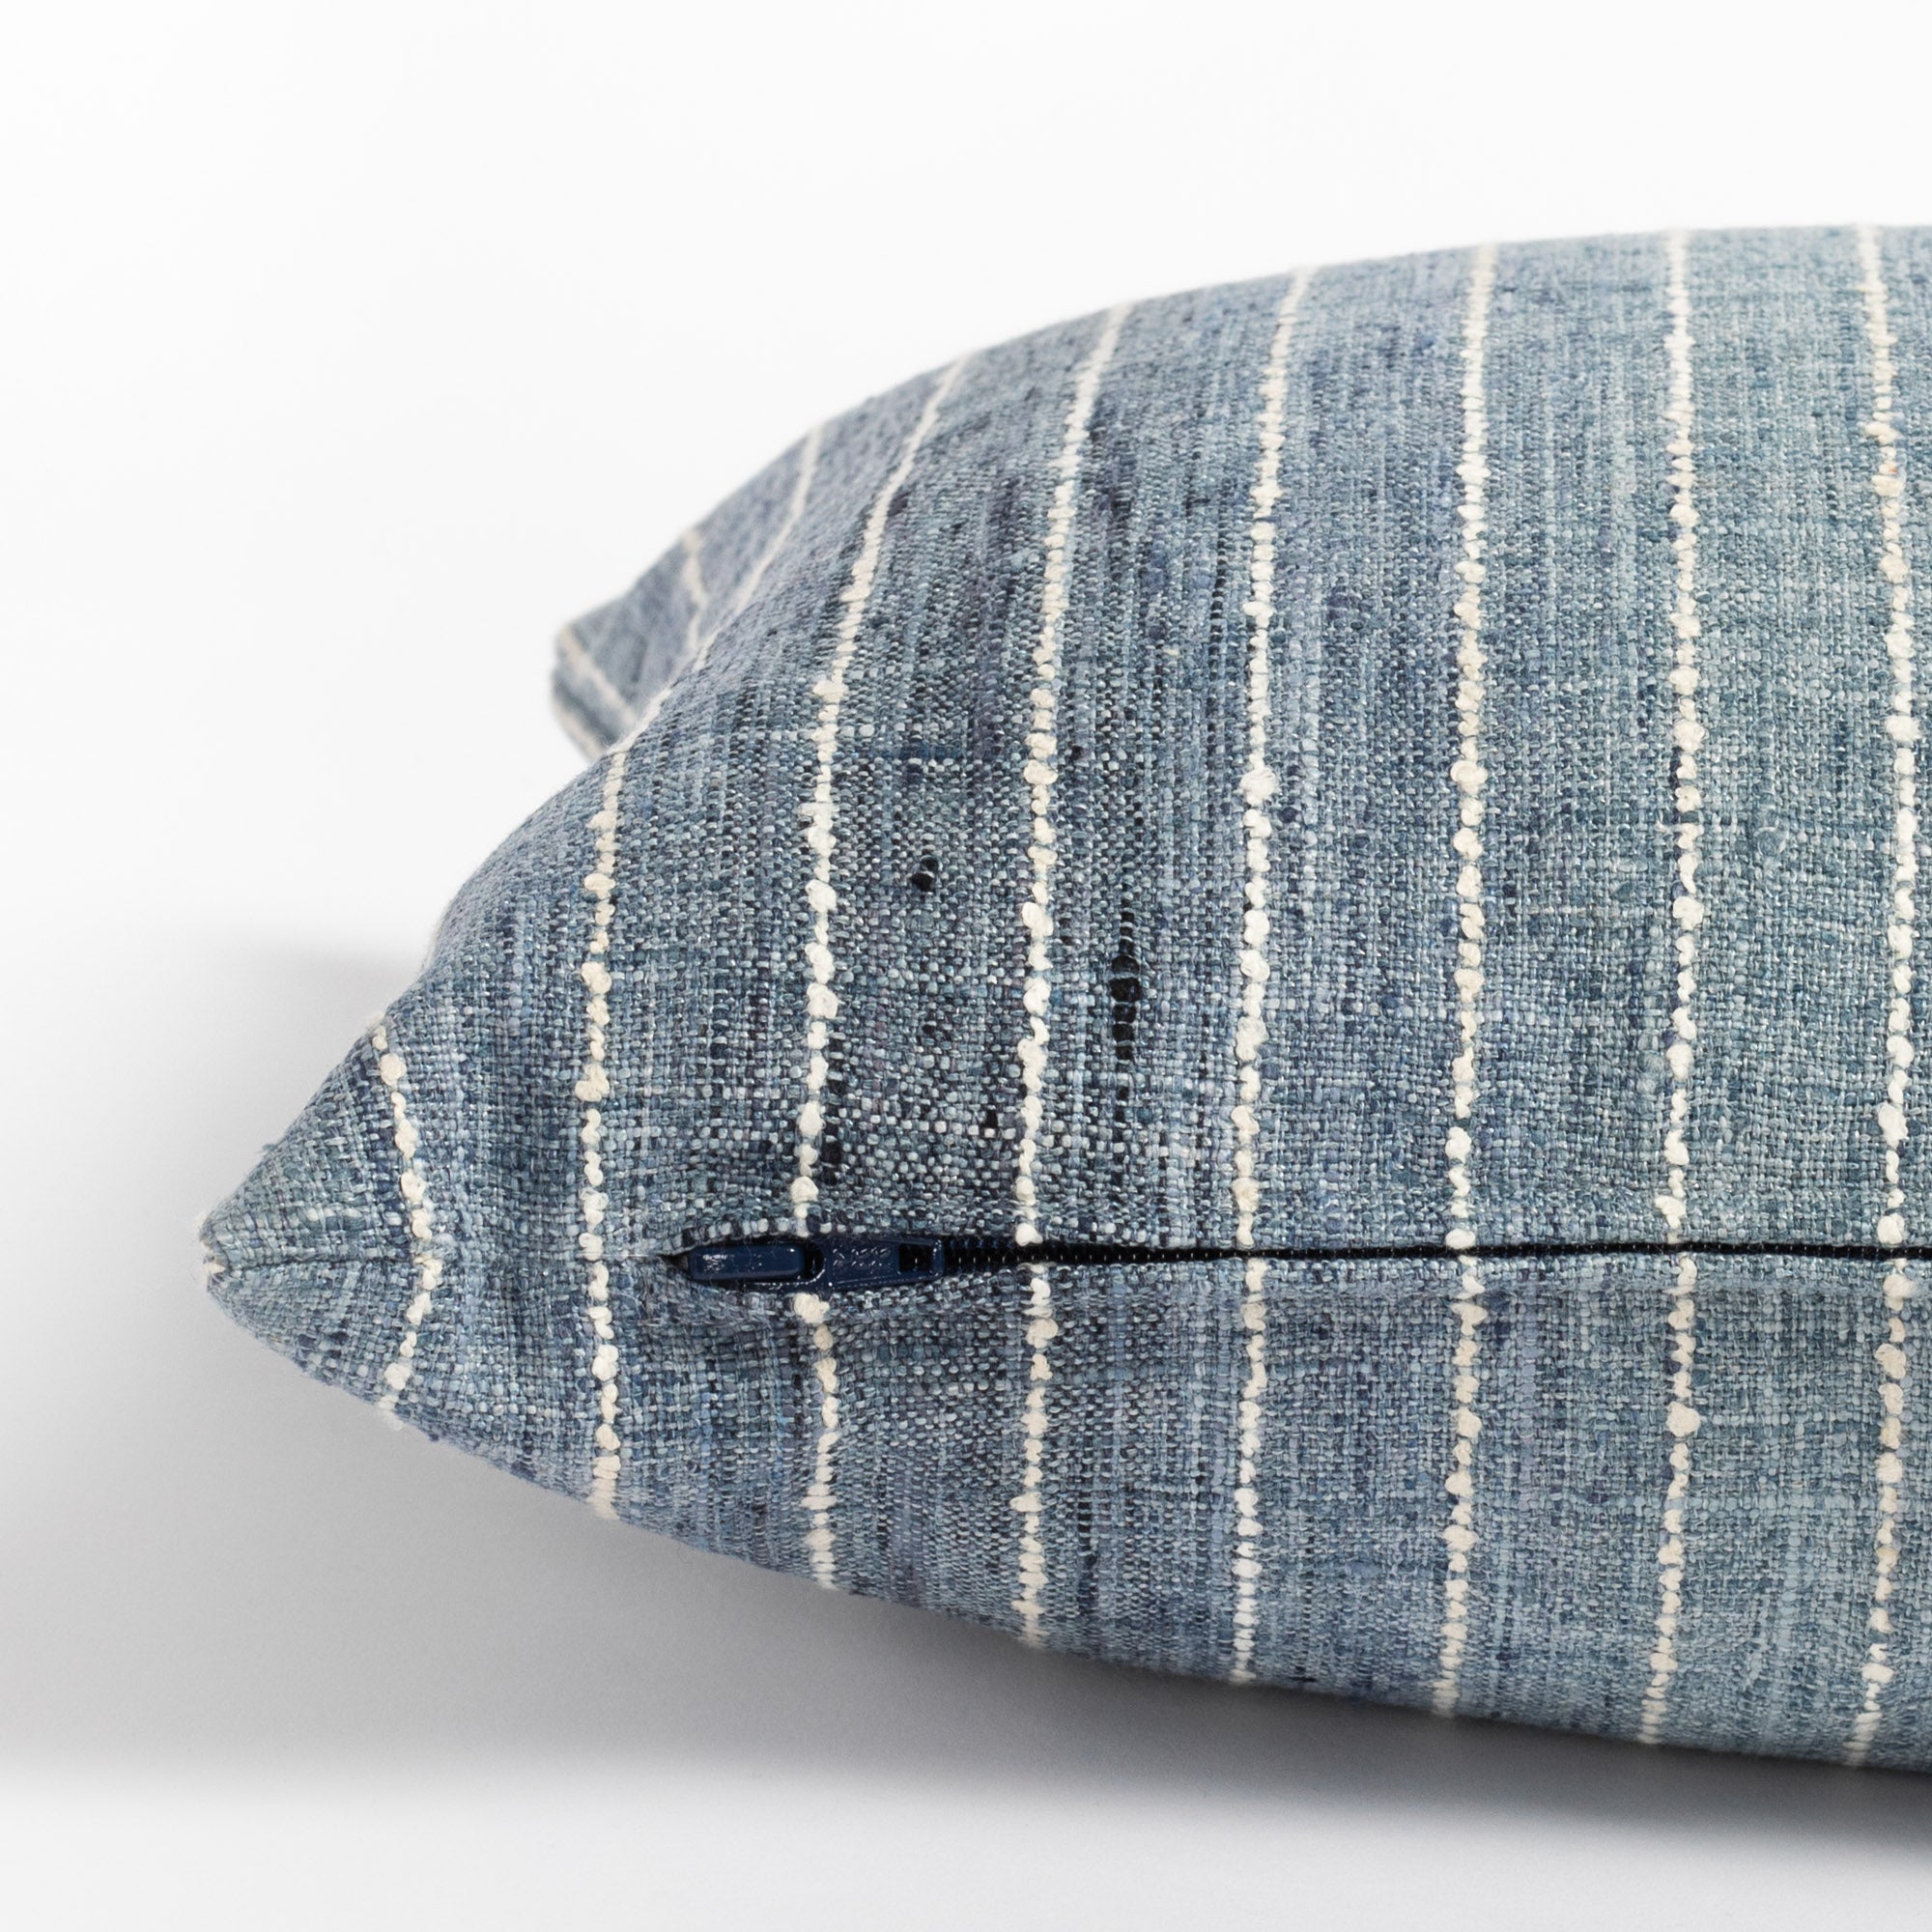 Hyden 14x20 lumbar pillow lake blue, an ombre blue stripe lumbar pillow : close up zipper side